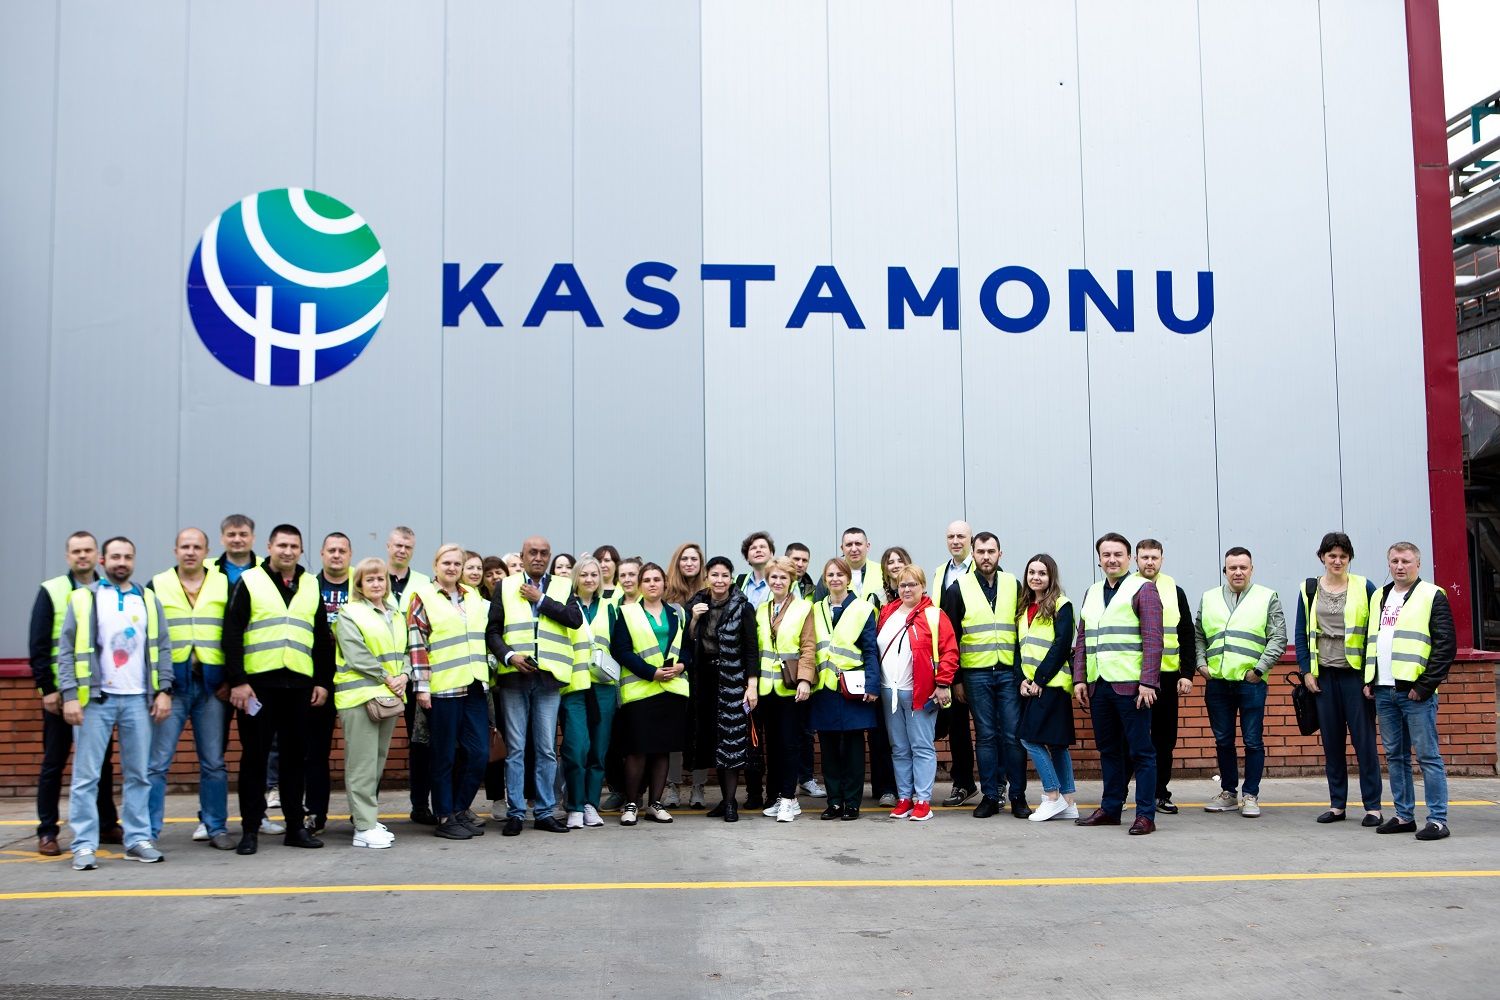 Kastamonu организовала 9 дилерских конференций для партнеров